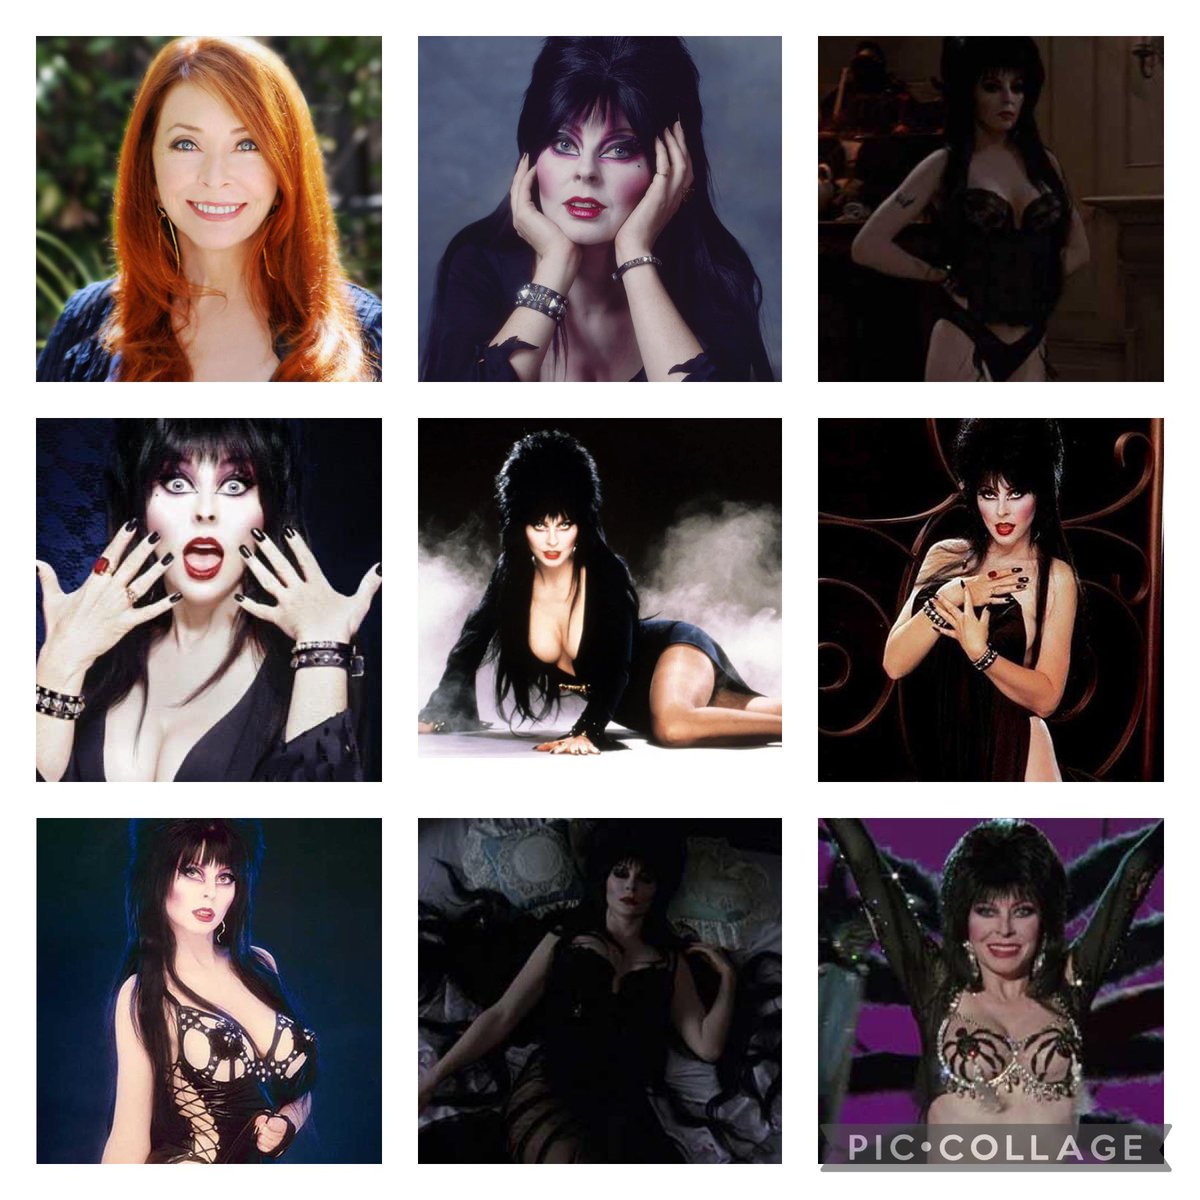 Happy birthday to Elvira 😍🥳 #Elvira #HappyBirthdayElvira #ElviraMistressoftheDark #ElvirasHauntedHills #ElvirasMovieMacabre #TheElviraShow #13NightsofElvira #beautiful